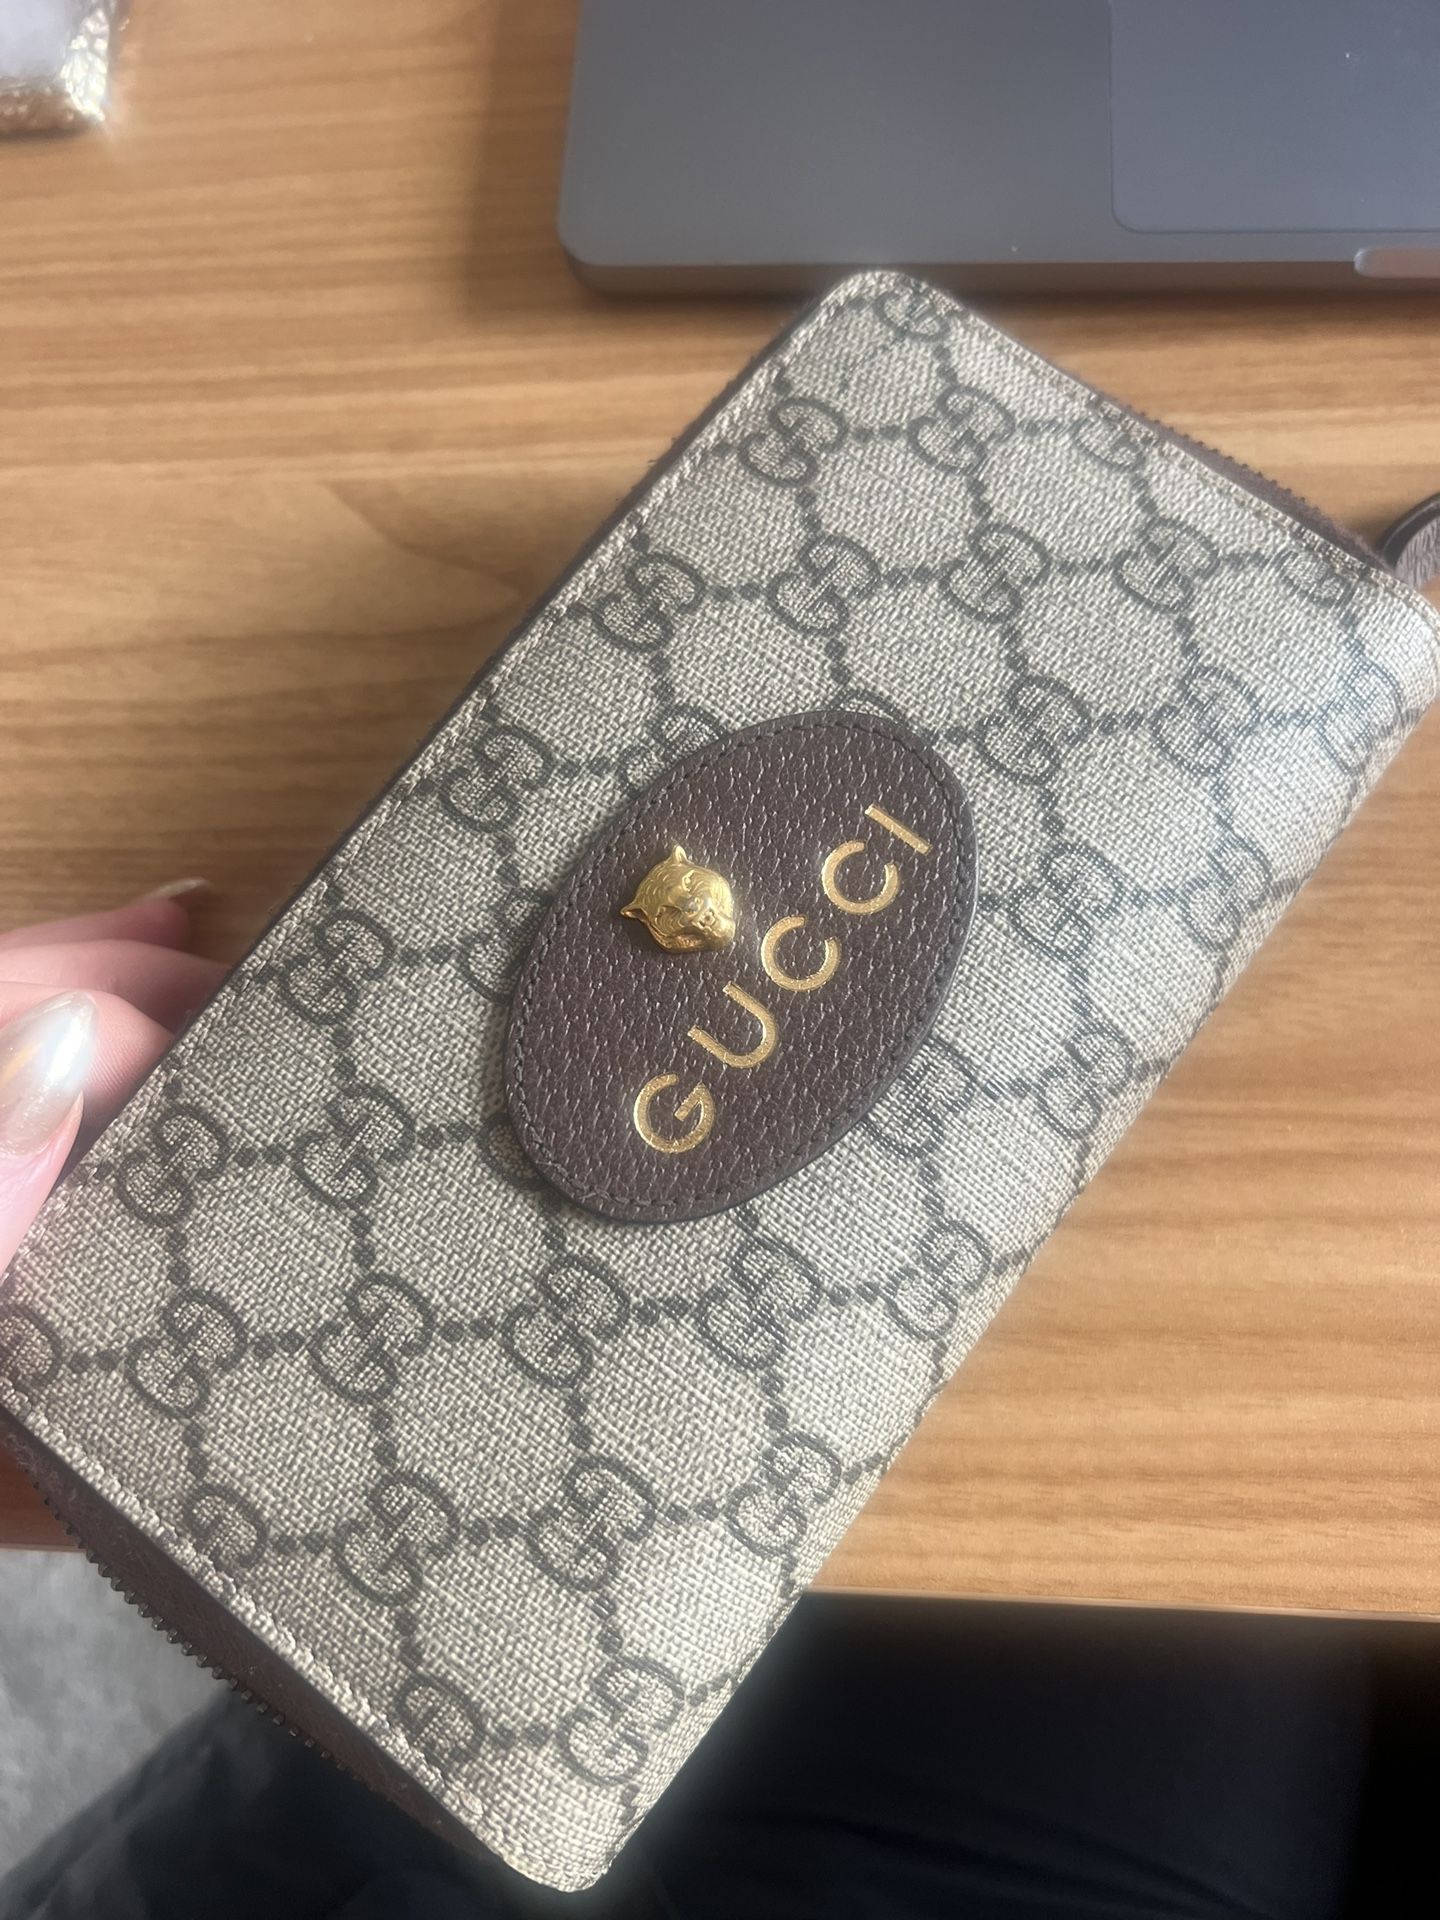 Gucci Neo Vintage GG Supreme zip around Wallet 